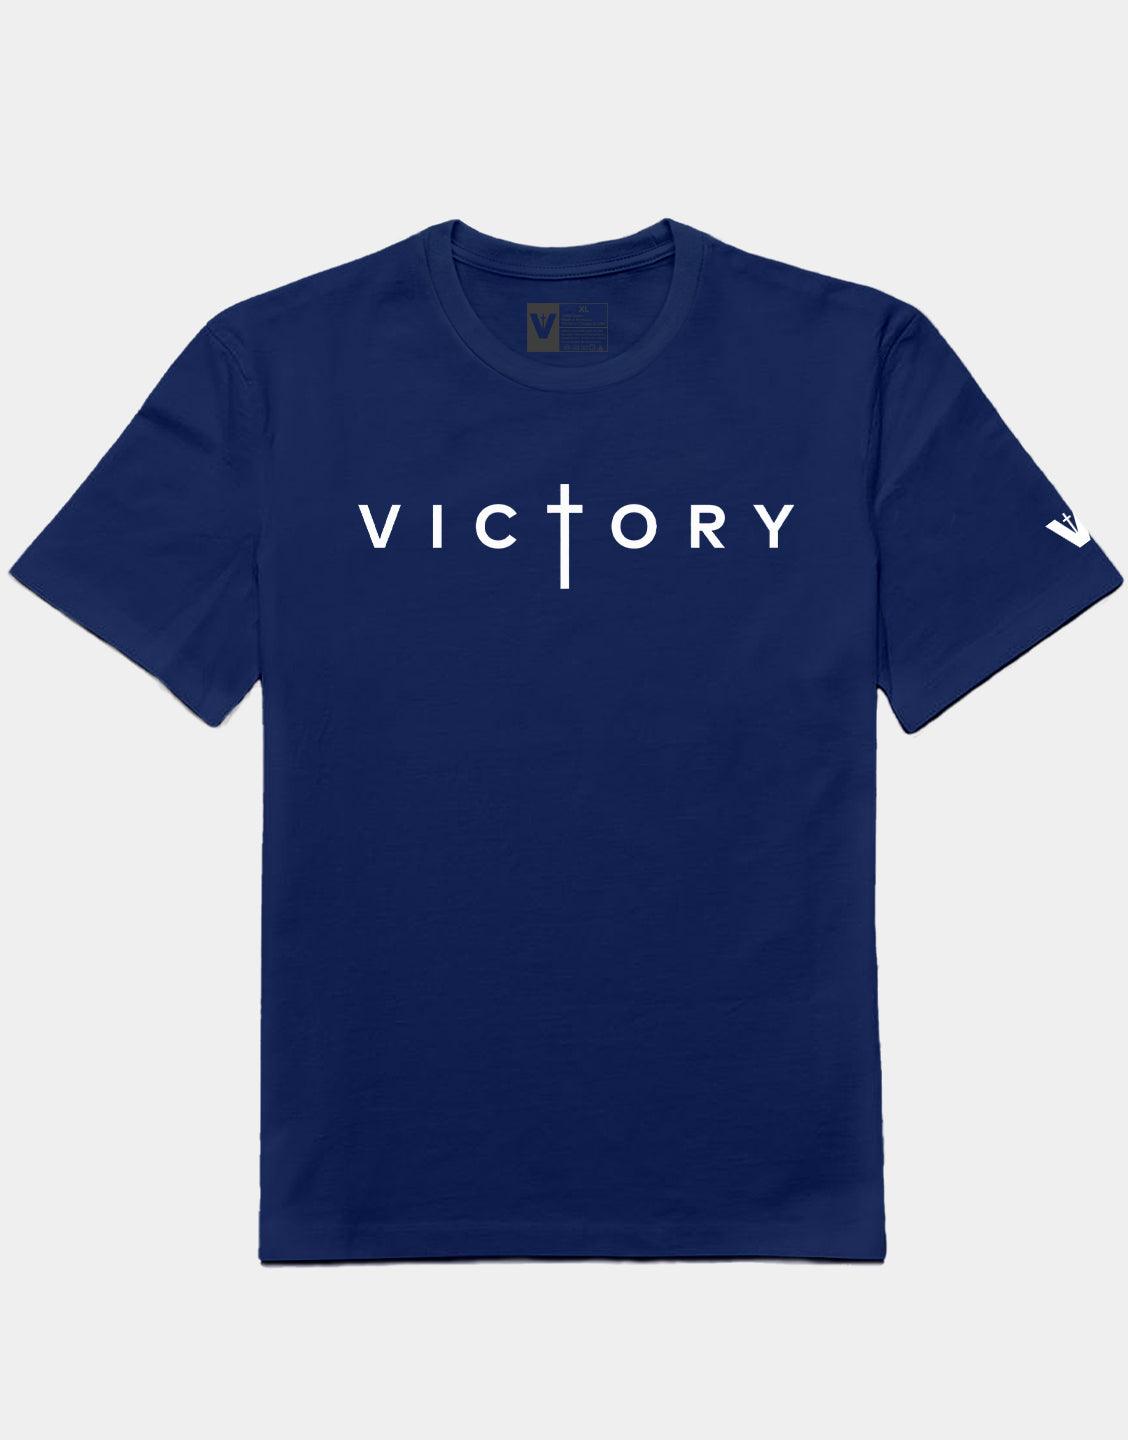 T Victory Navy Clothing Shirt – VOTC